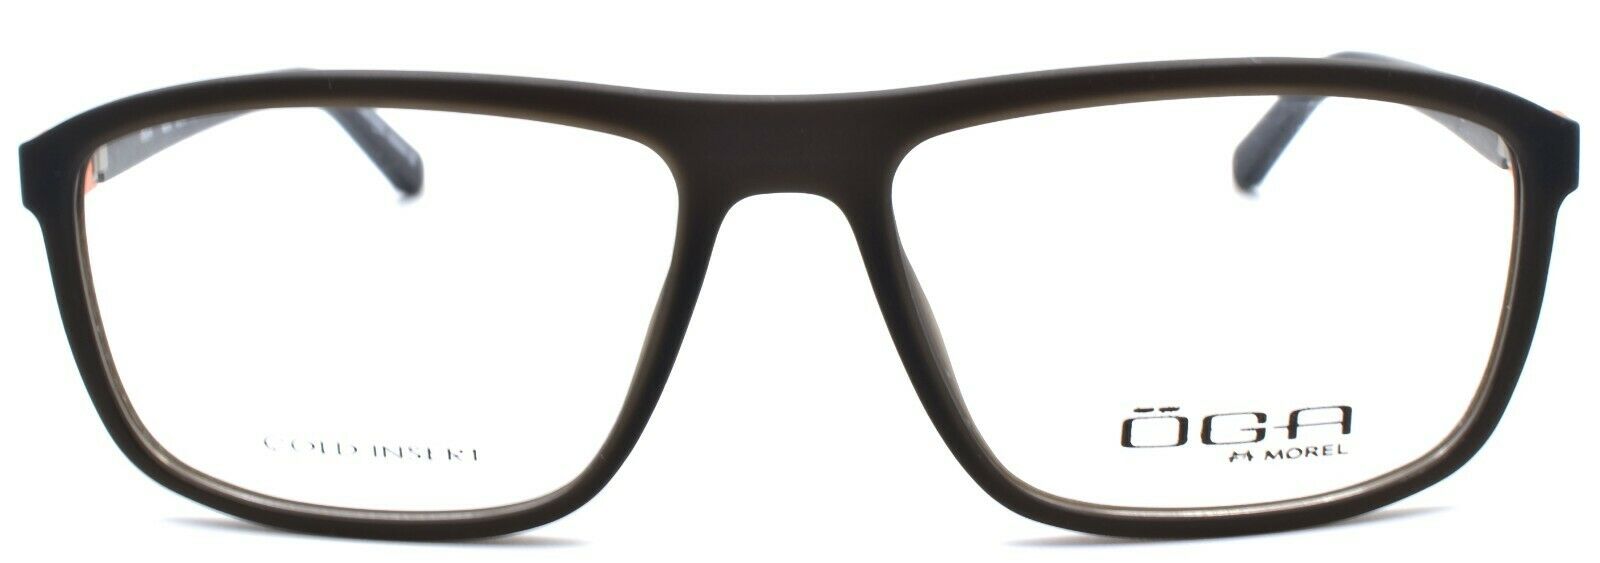 2-OGA by Morel 8203O MO011 Men's Eyeglasses Frames 55-16-140 Dark Grey-3604770897630-IKSpecs